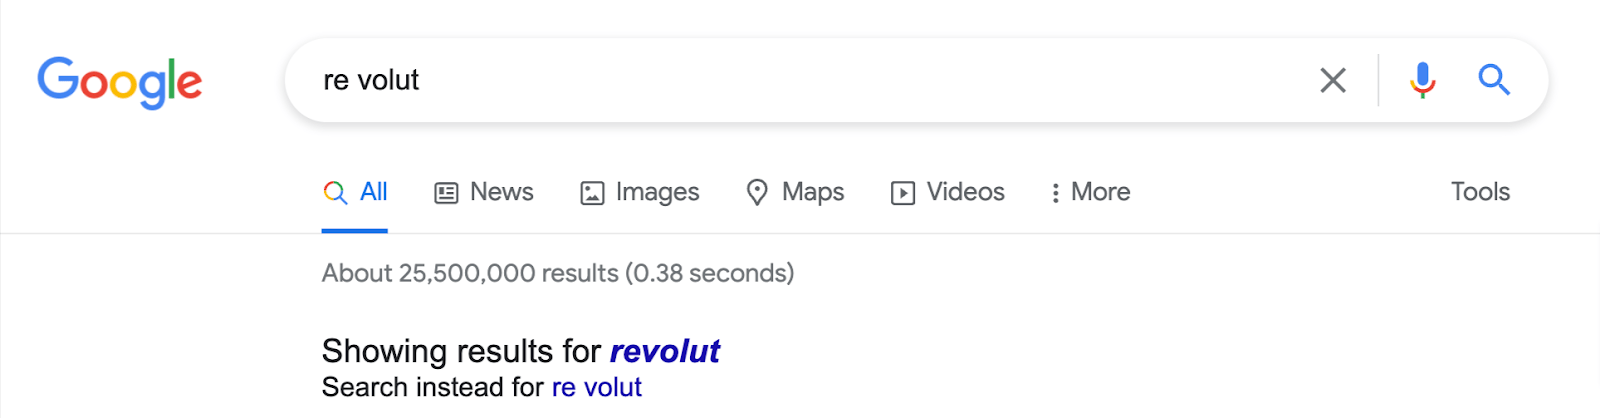 غلط املایی از "انقلاب" مانند "دوباره ولوت";  Google عبارت را تصحیح خودکار می کند و نشان می دهد که نتایج نام را با املای صحیح نشان می دهد